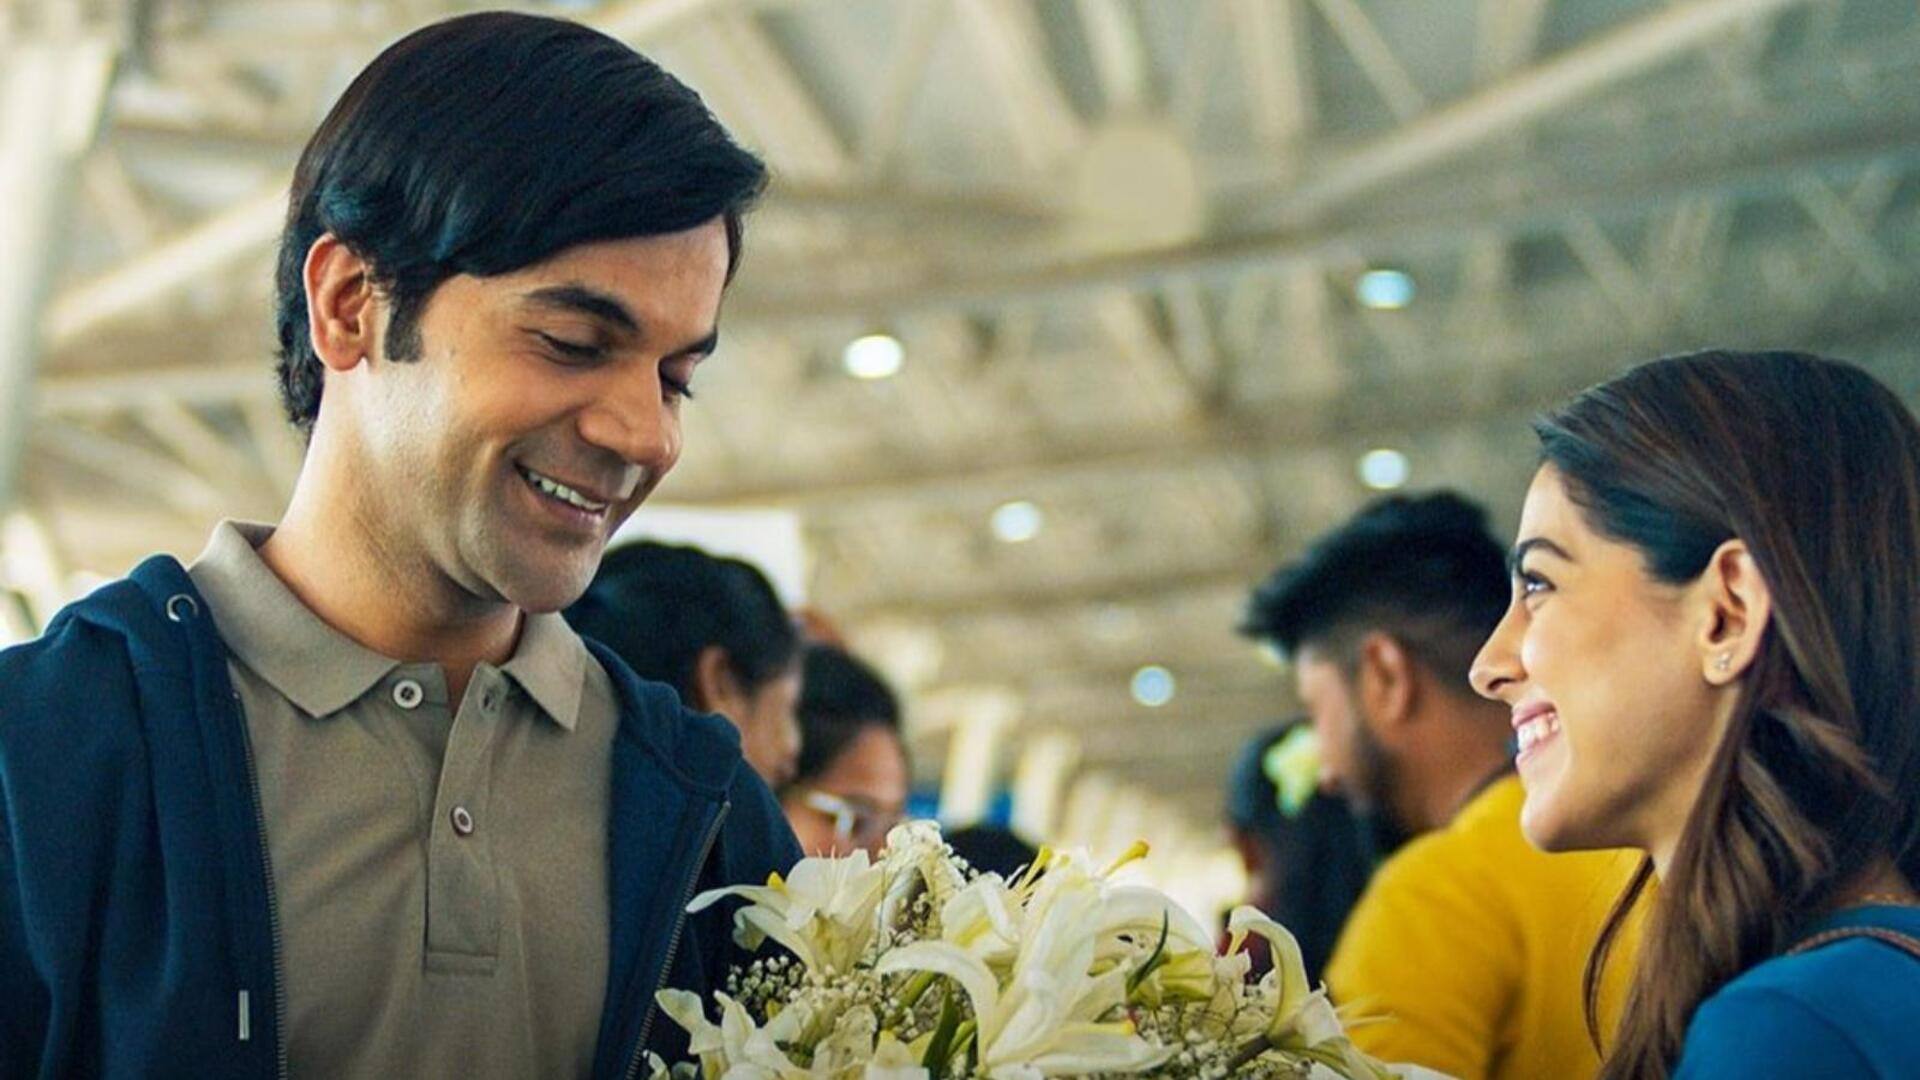 राजकुमार राव की फिल्म 'श्रीकांत' का गाना 'तुम्हें ही अपना माना है' हुआ रिलीज